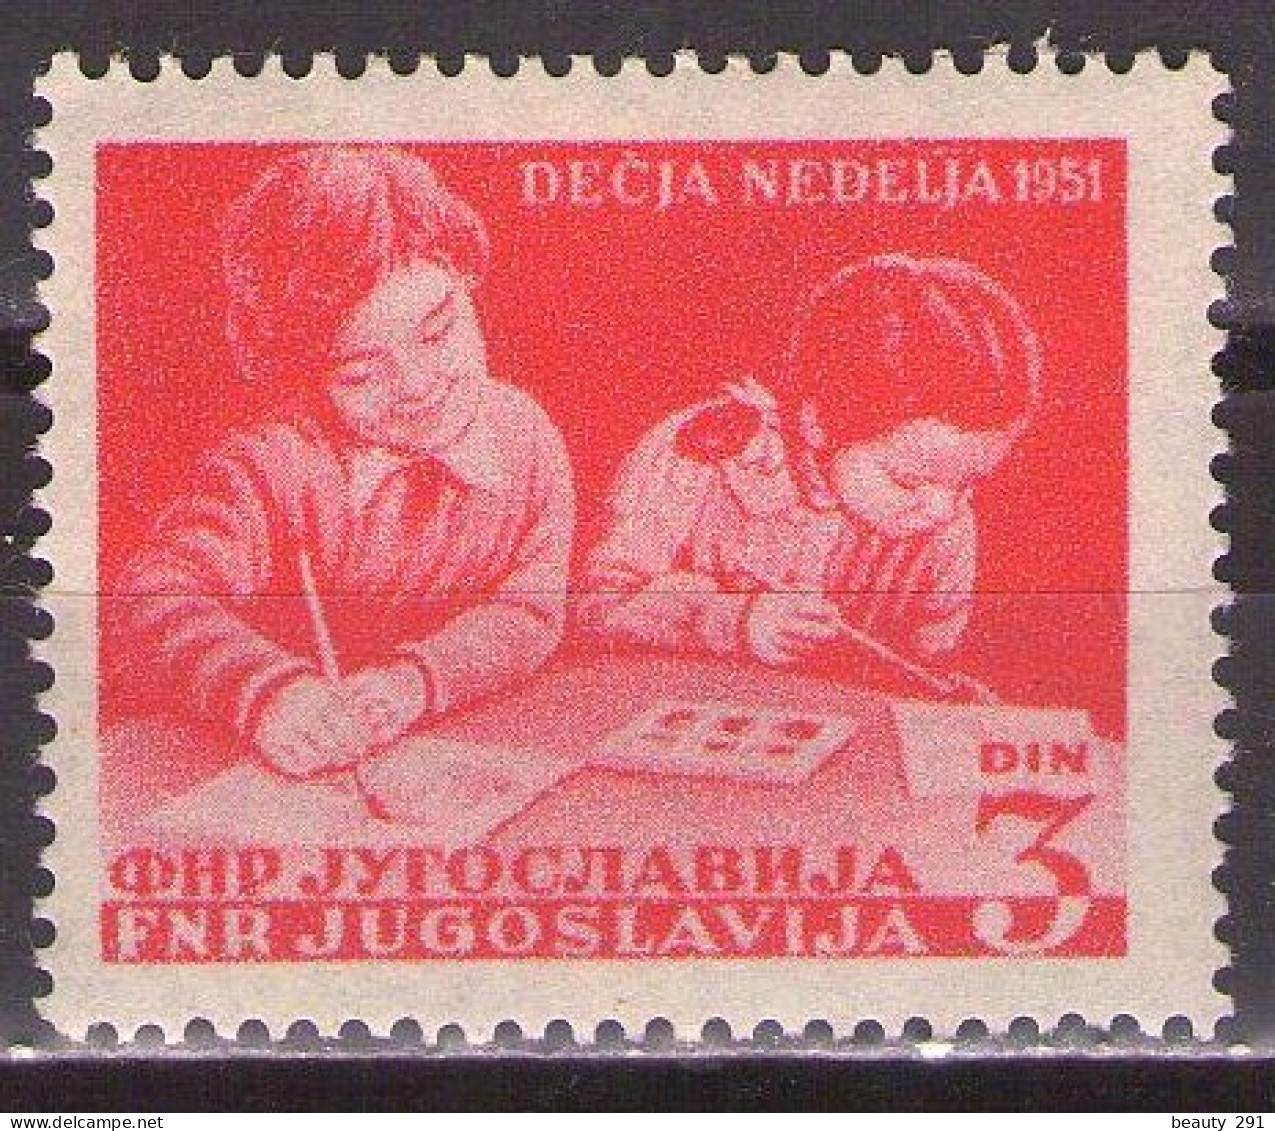 Yugoslavia 1951 - Children's Week - Mi 643 - MNH**VF - Ungebraucht